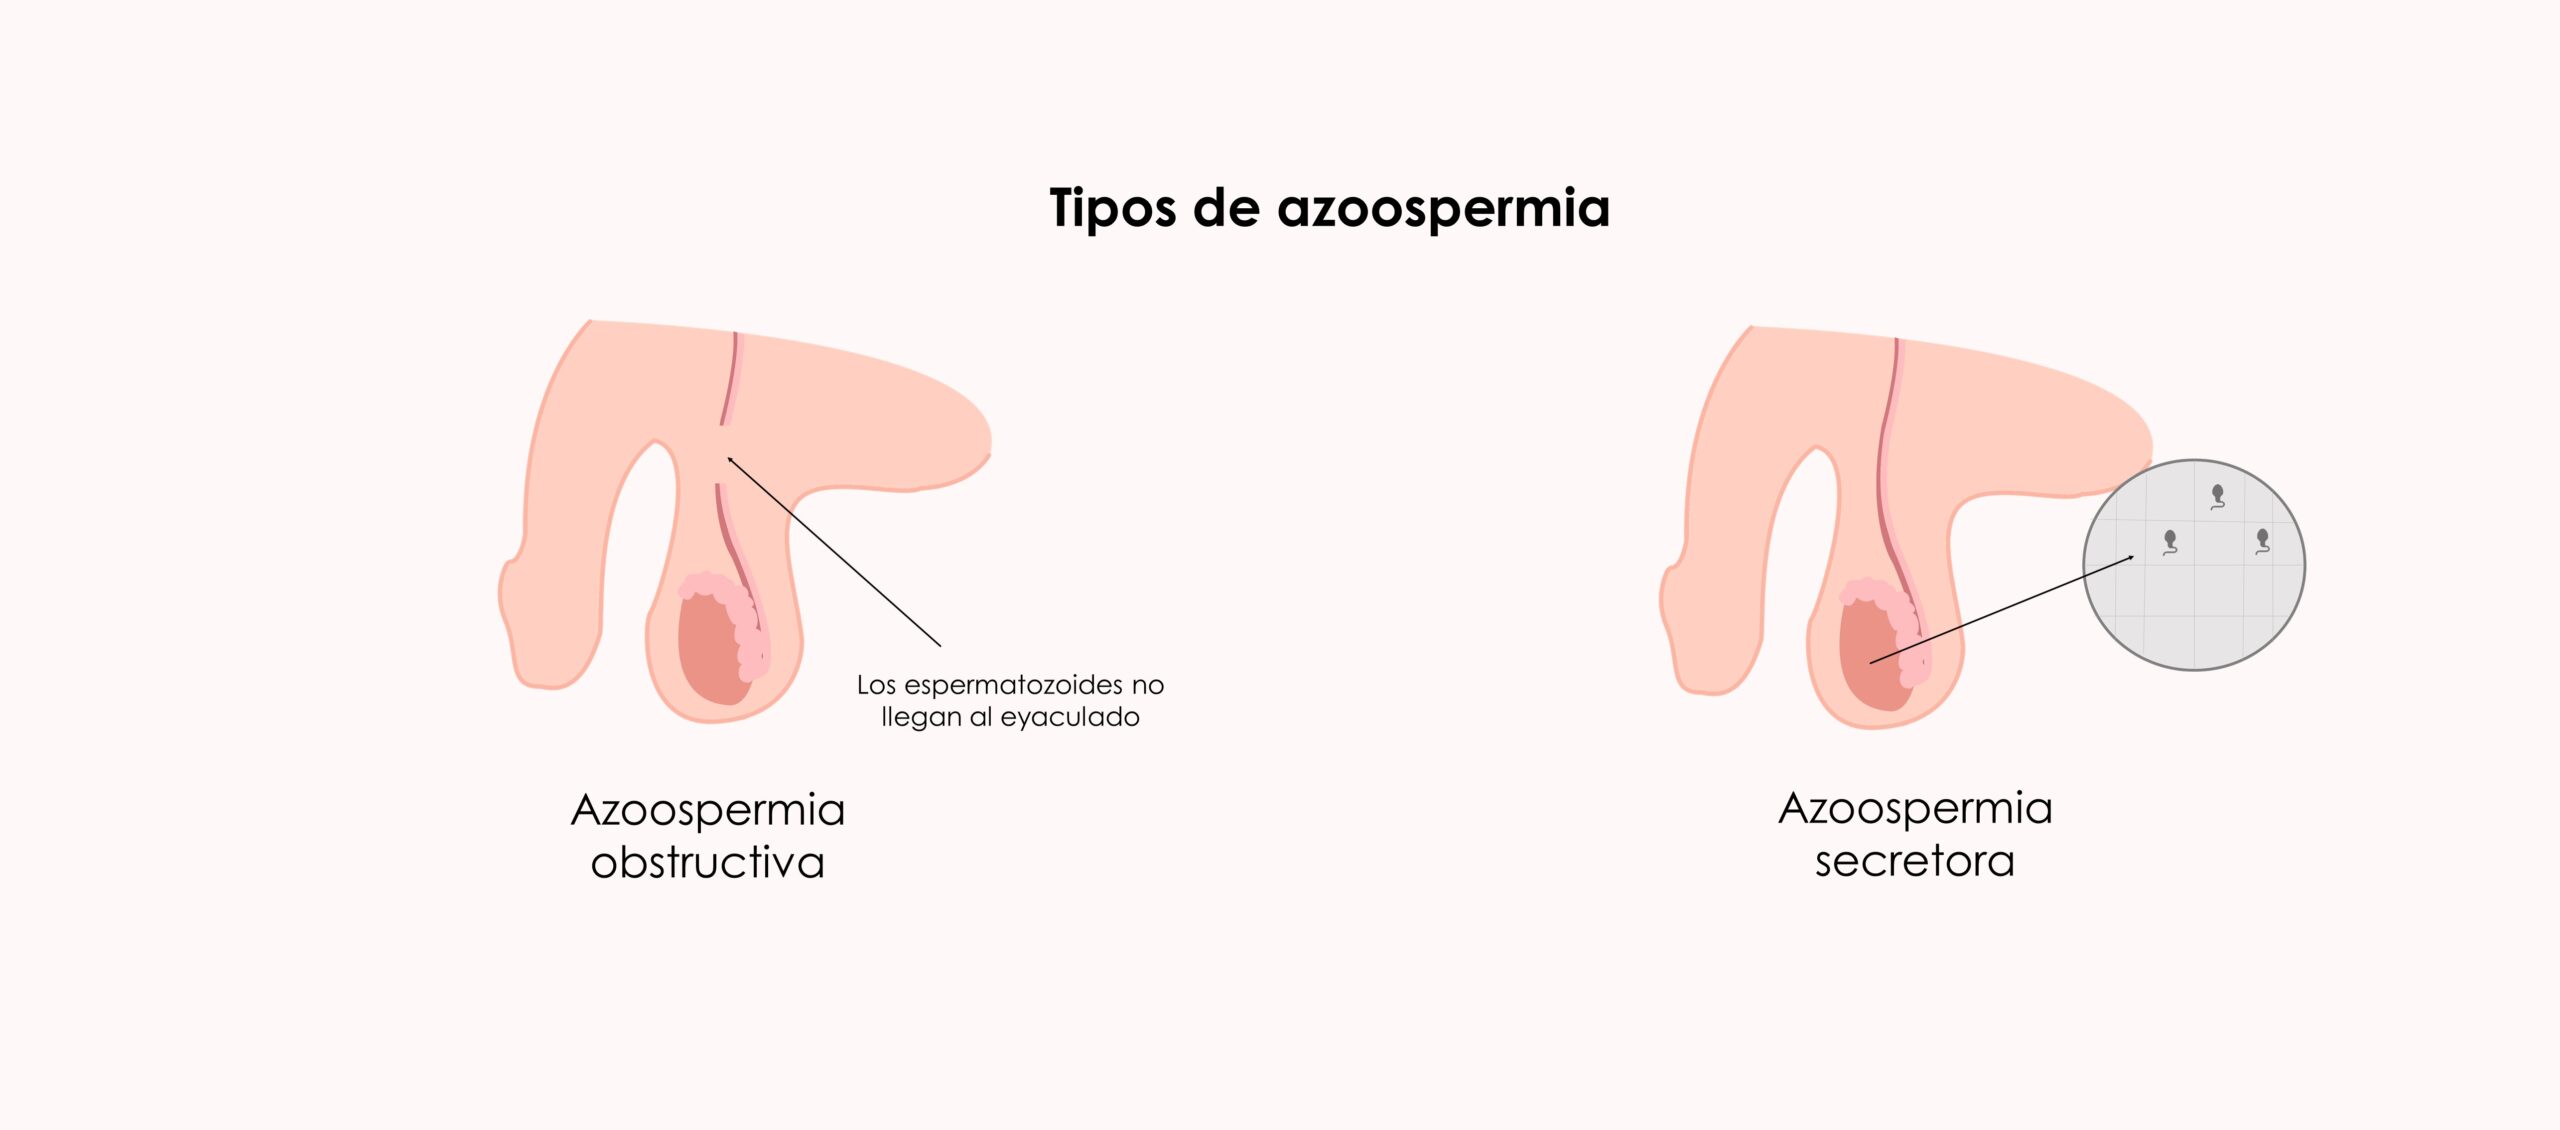 Tipos de azoospermia